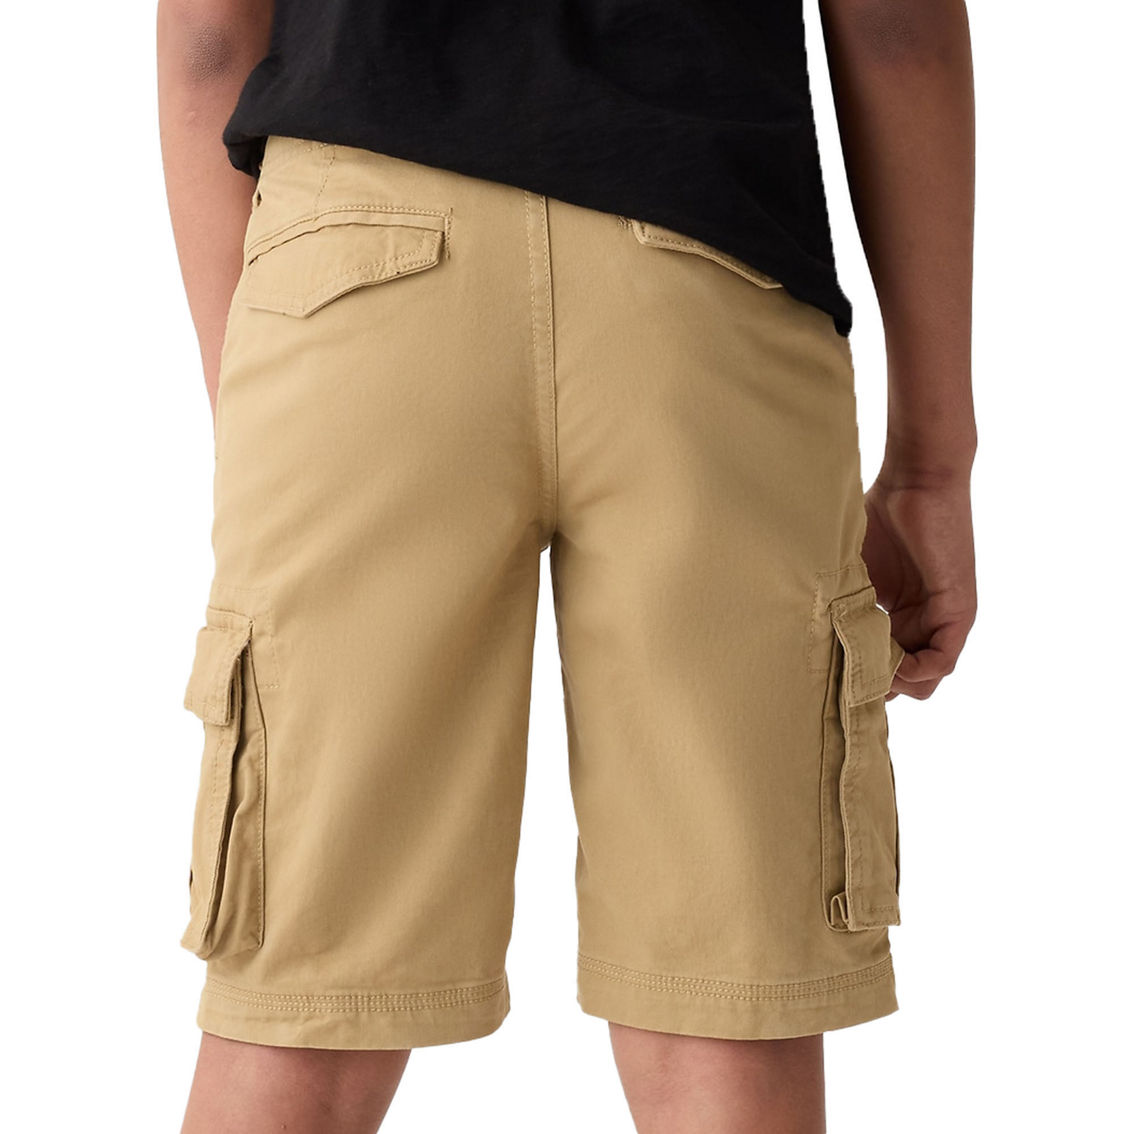 Gap Boys Cargo Shorts - Image 2 of 3